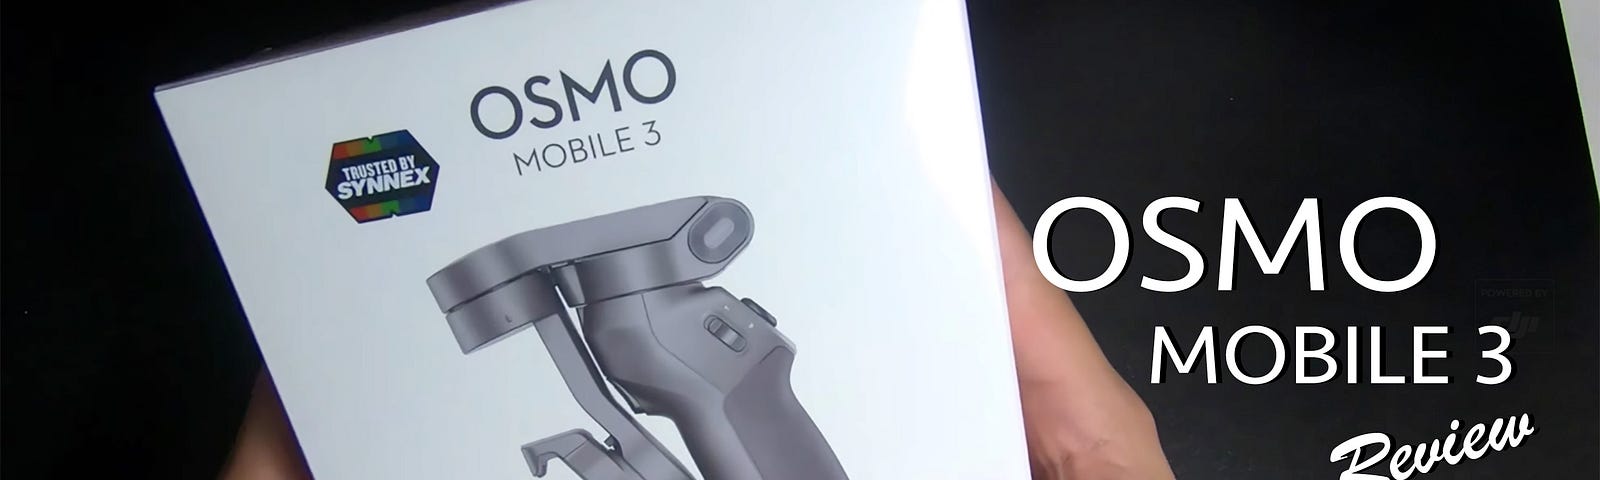 รีวิว แกะกล่อง DJI Osmo Mobile 3